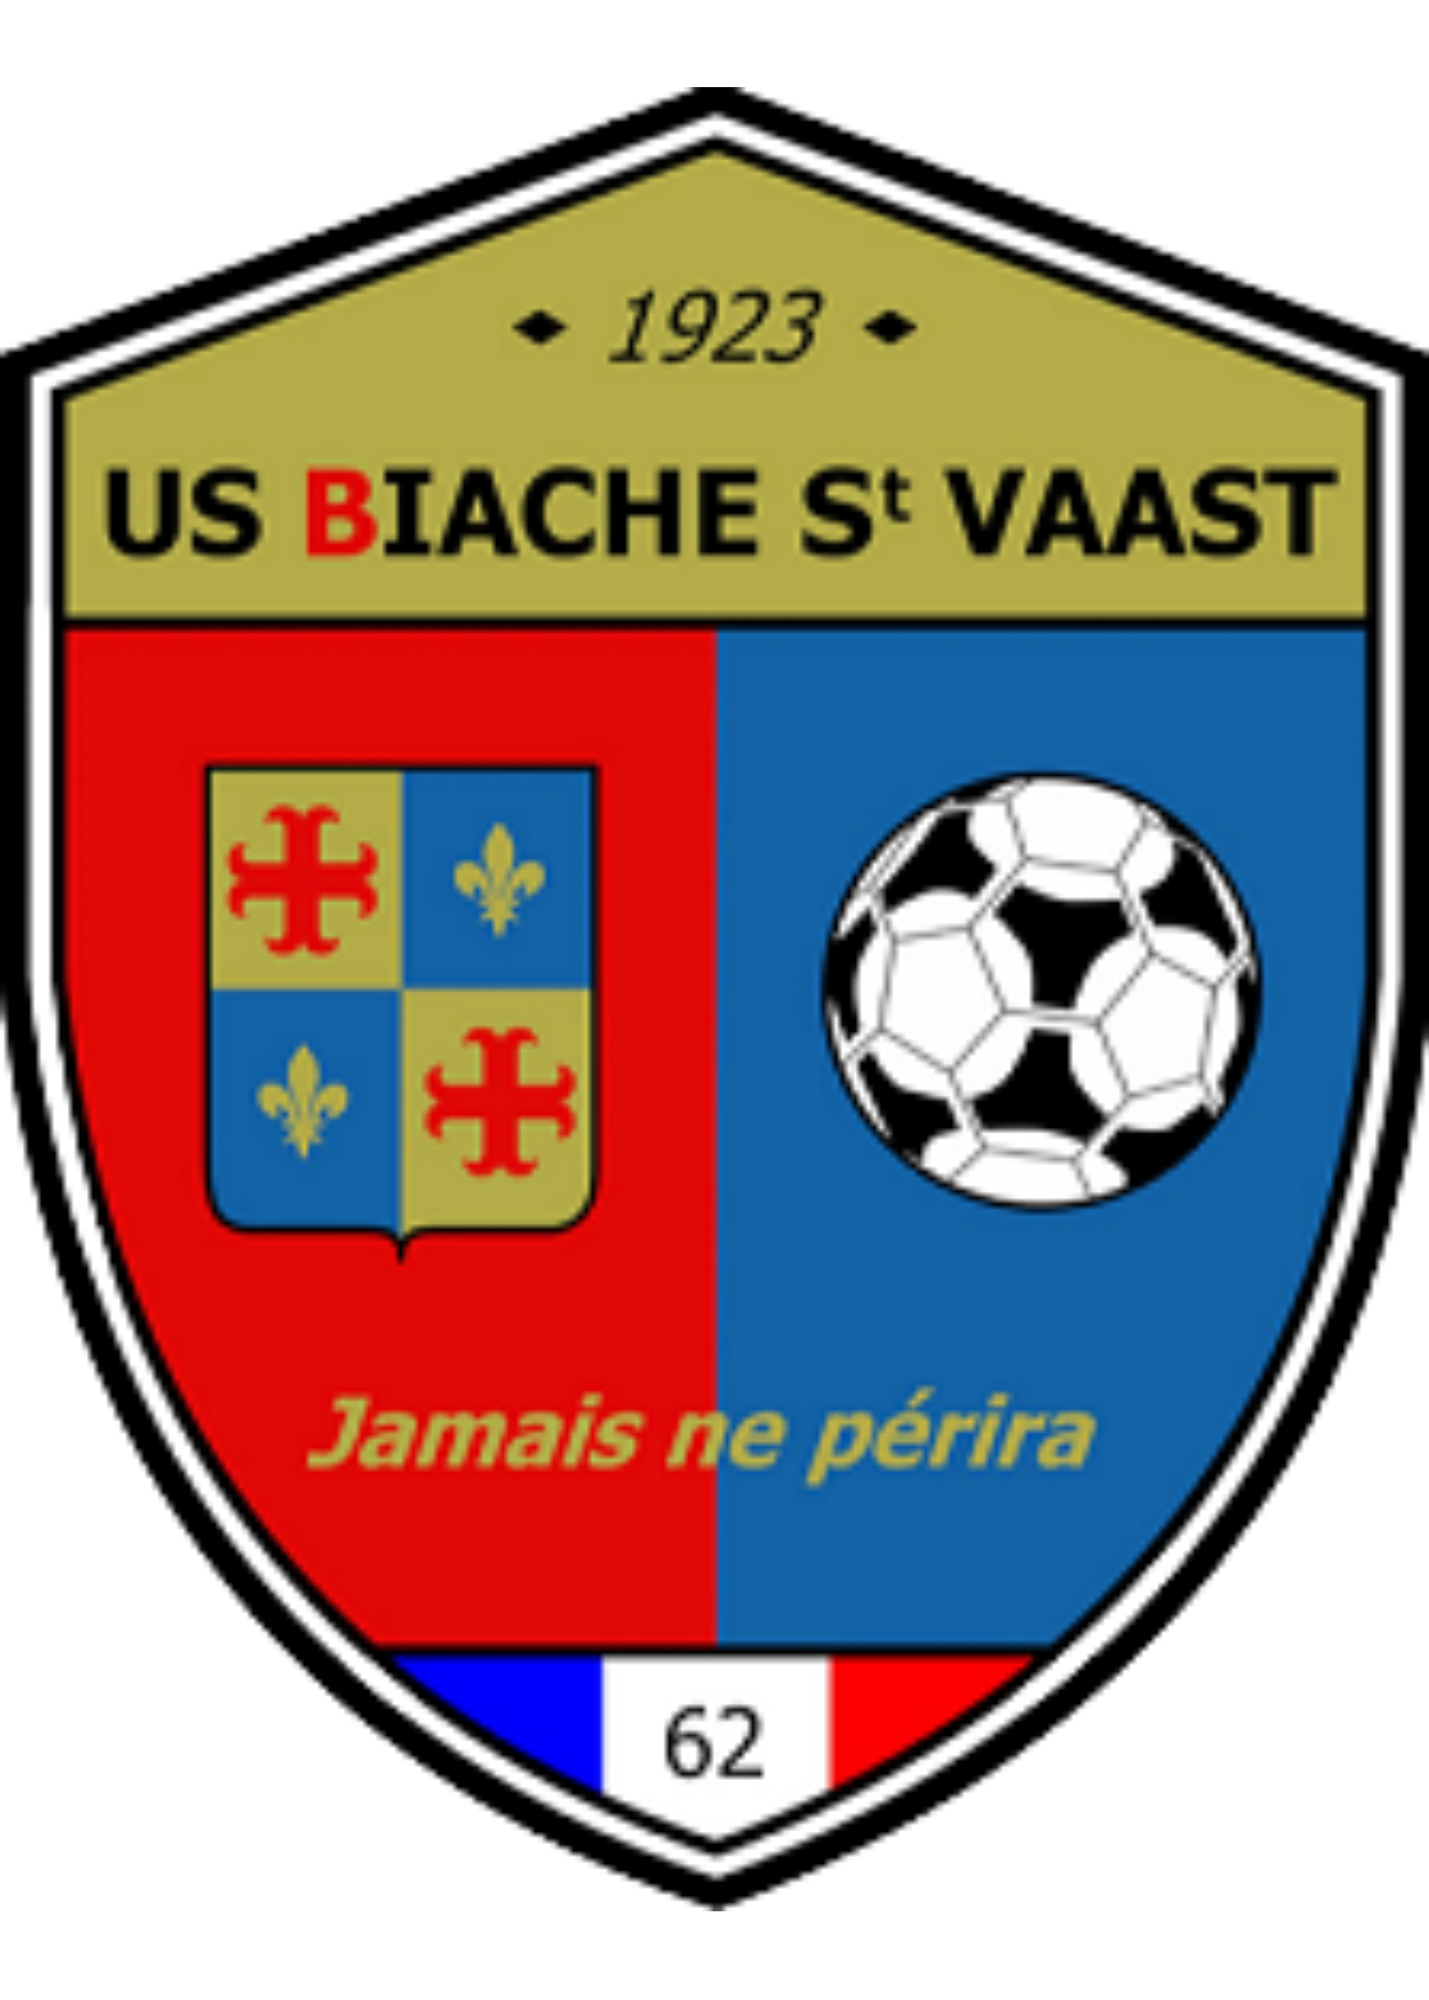 Biache-Saint-Vaast (R2)